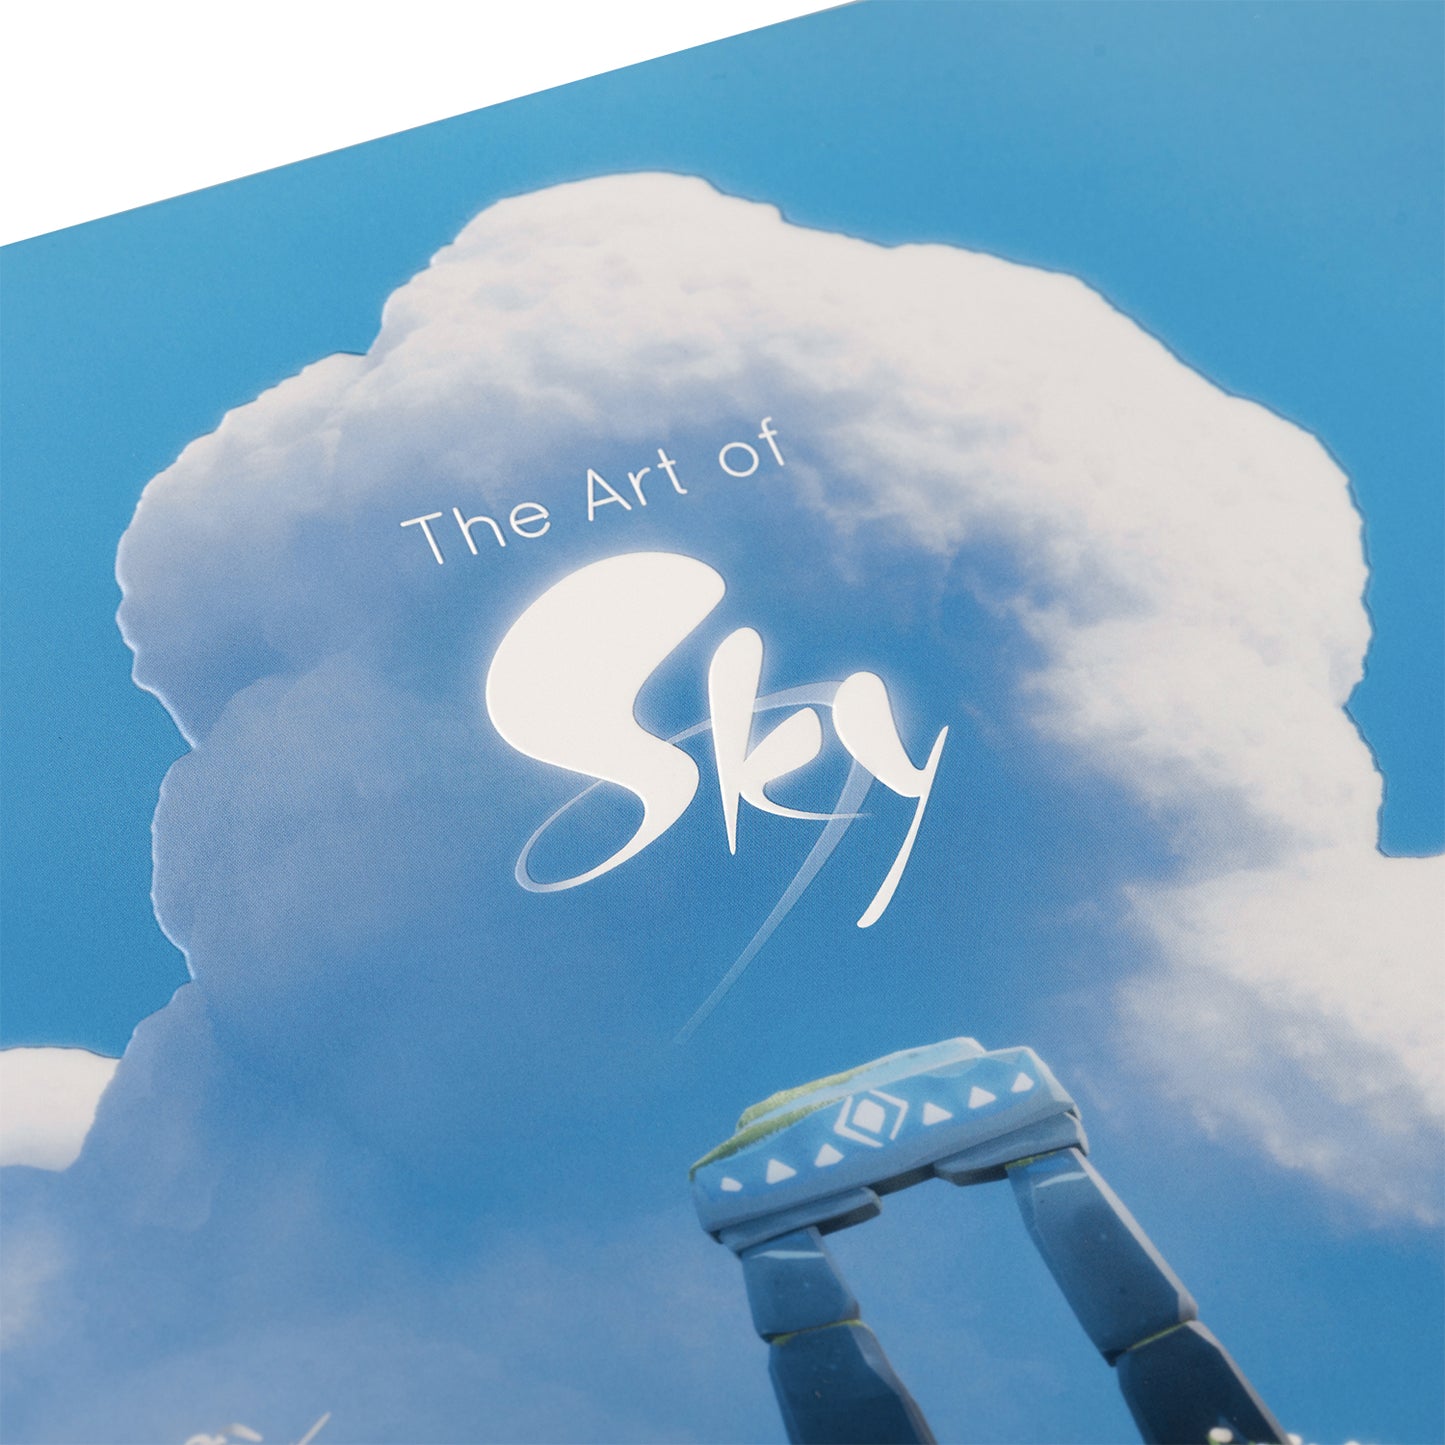 Sky公式アートブック『The Art of Sky』